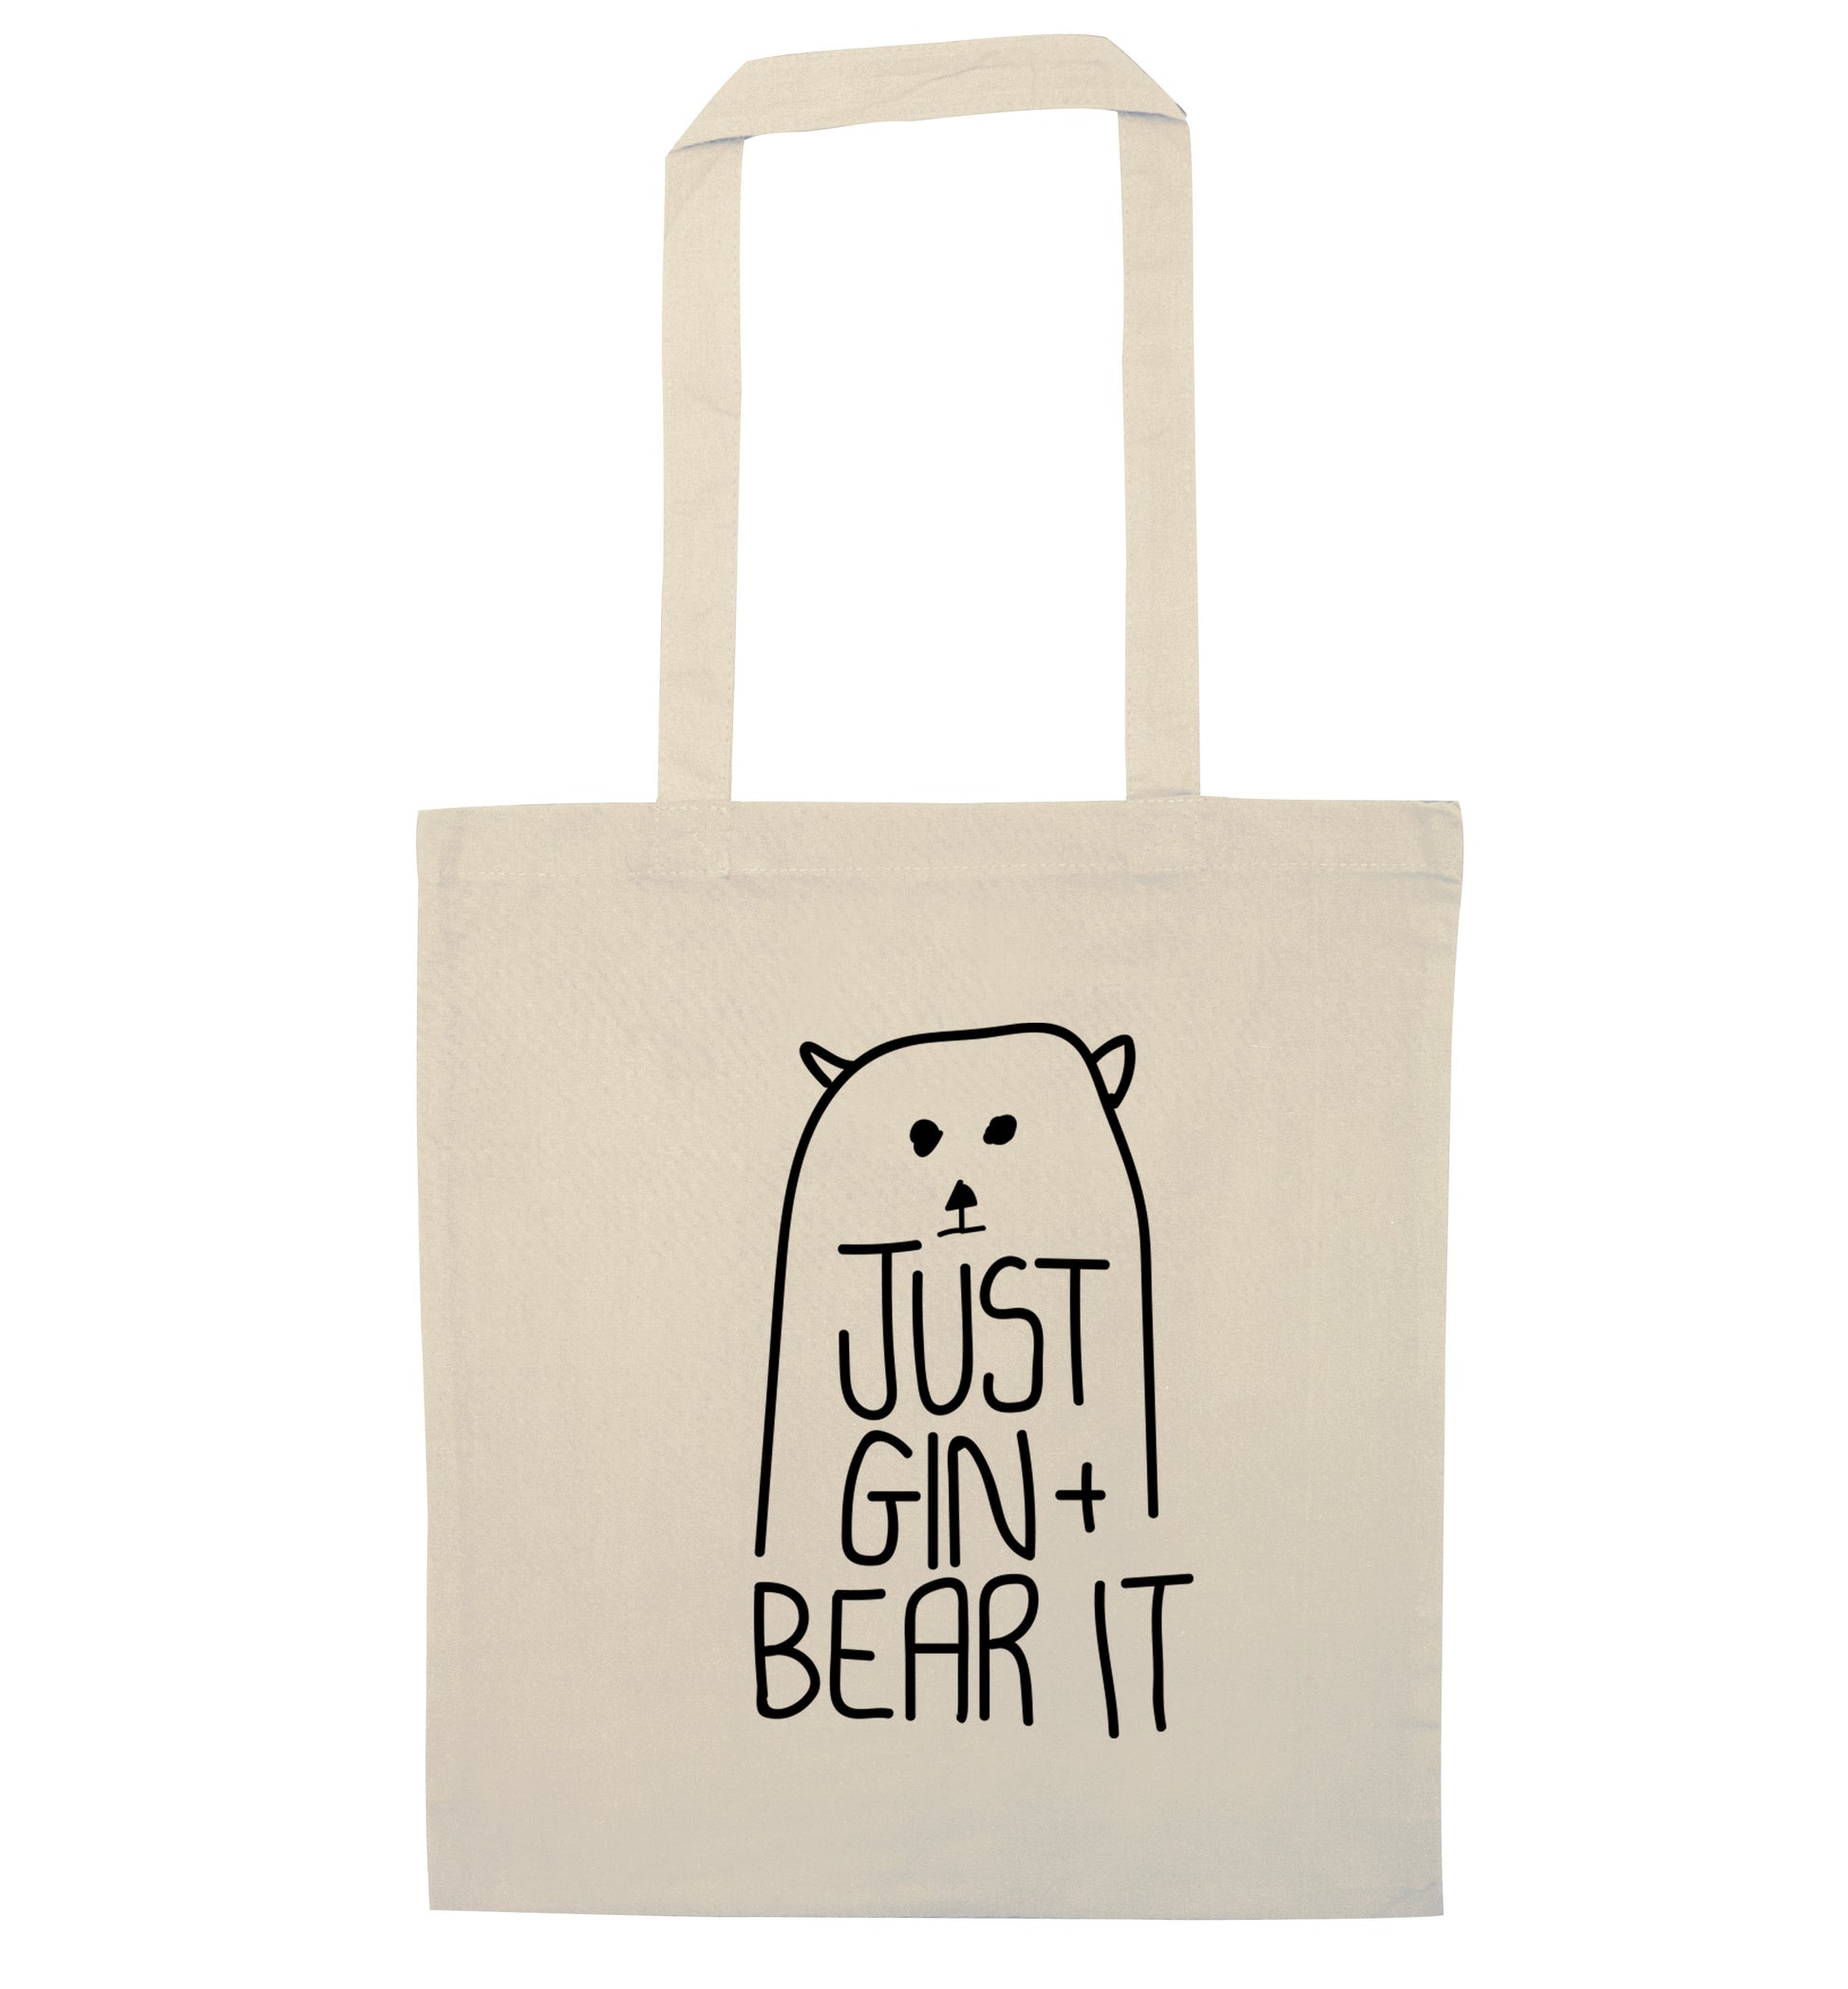 Just gin and bear it natural tote bag